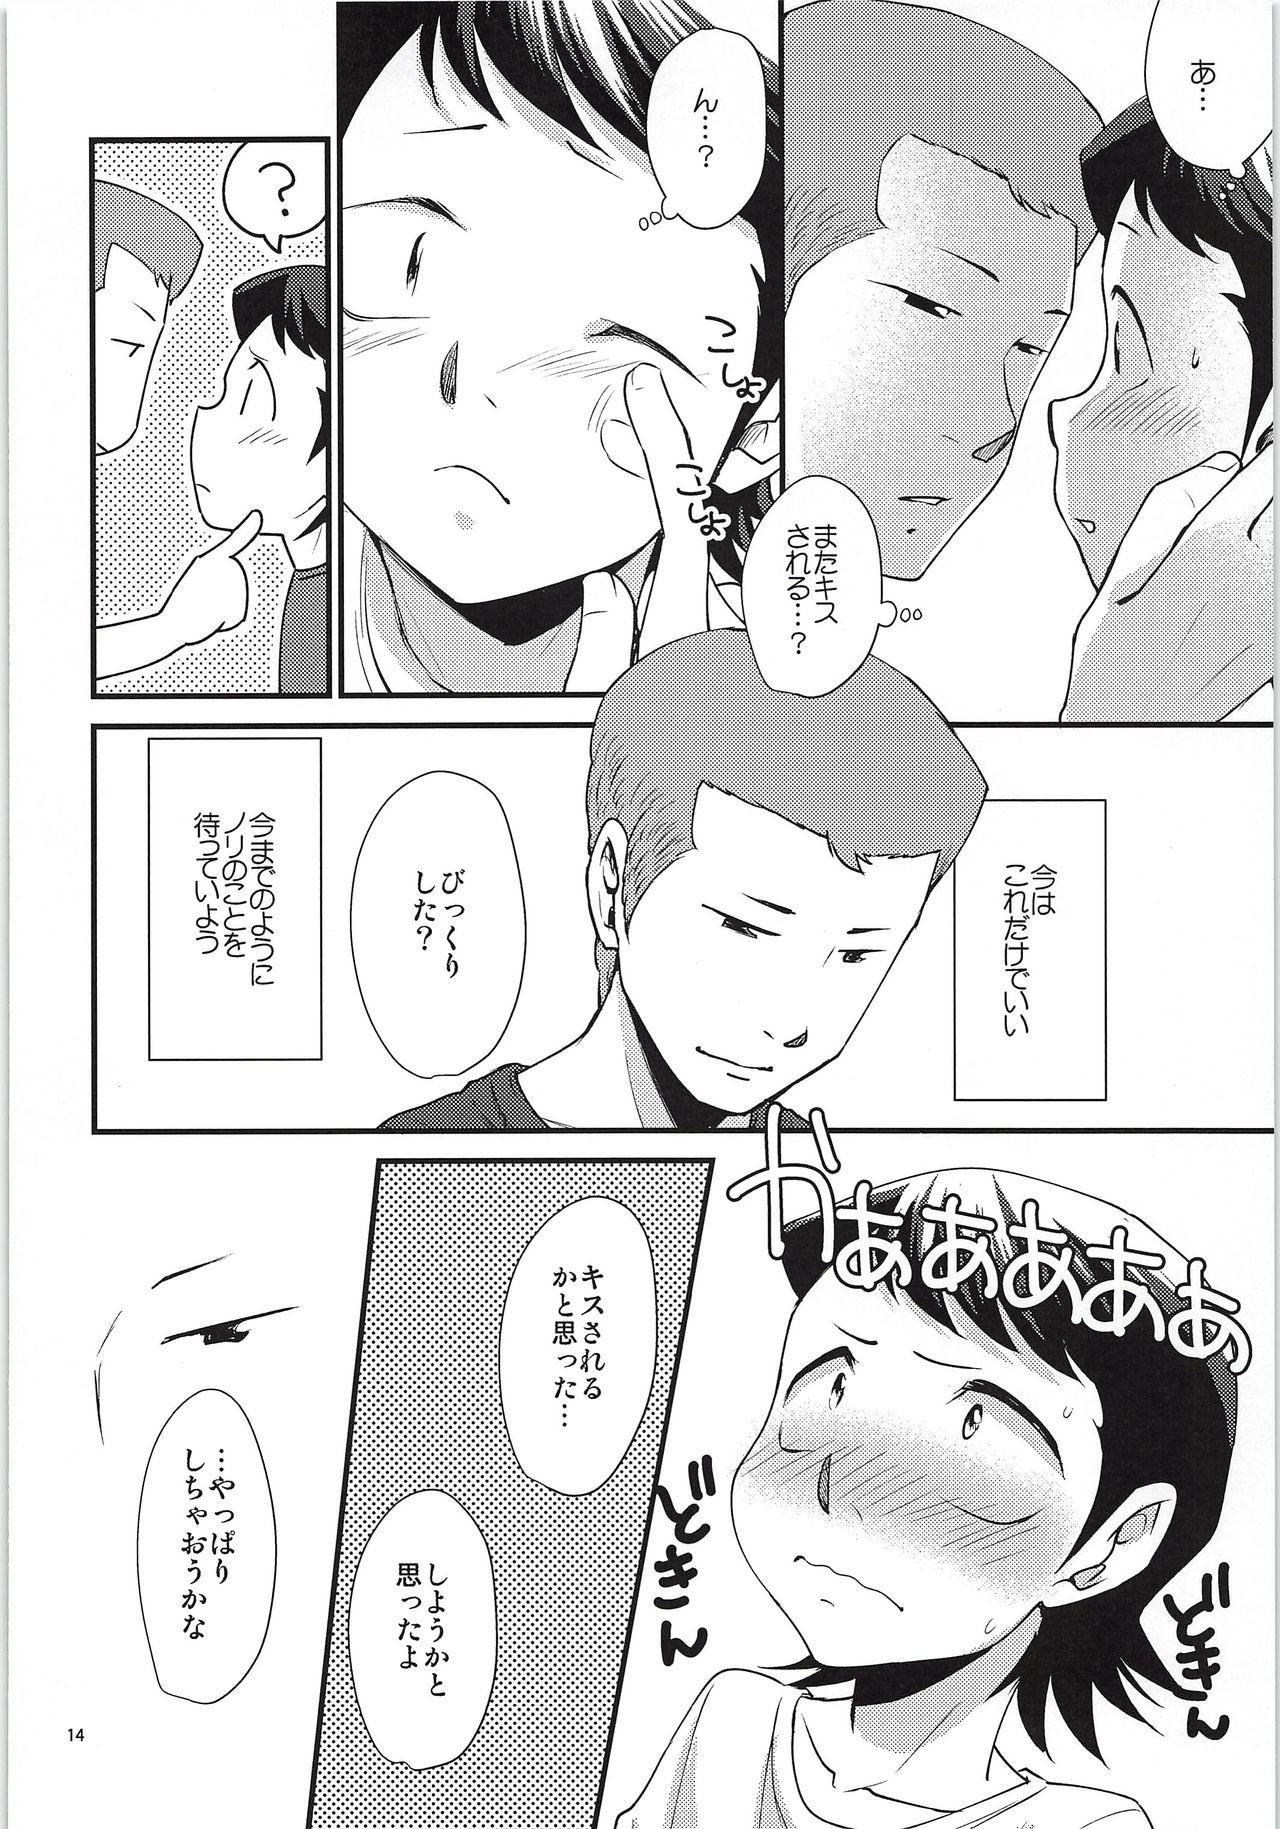 Ass Lick Tsukiatte 3 Nichimenanoni Kareshi ga Guigui Semetekuru Ken - Daiya no ace From - Page 13